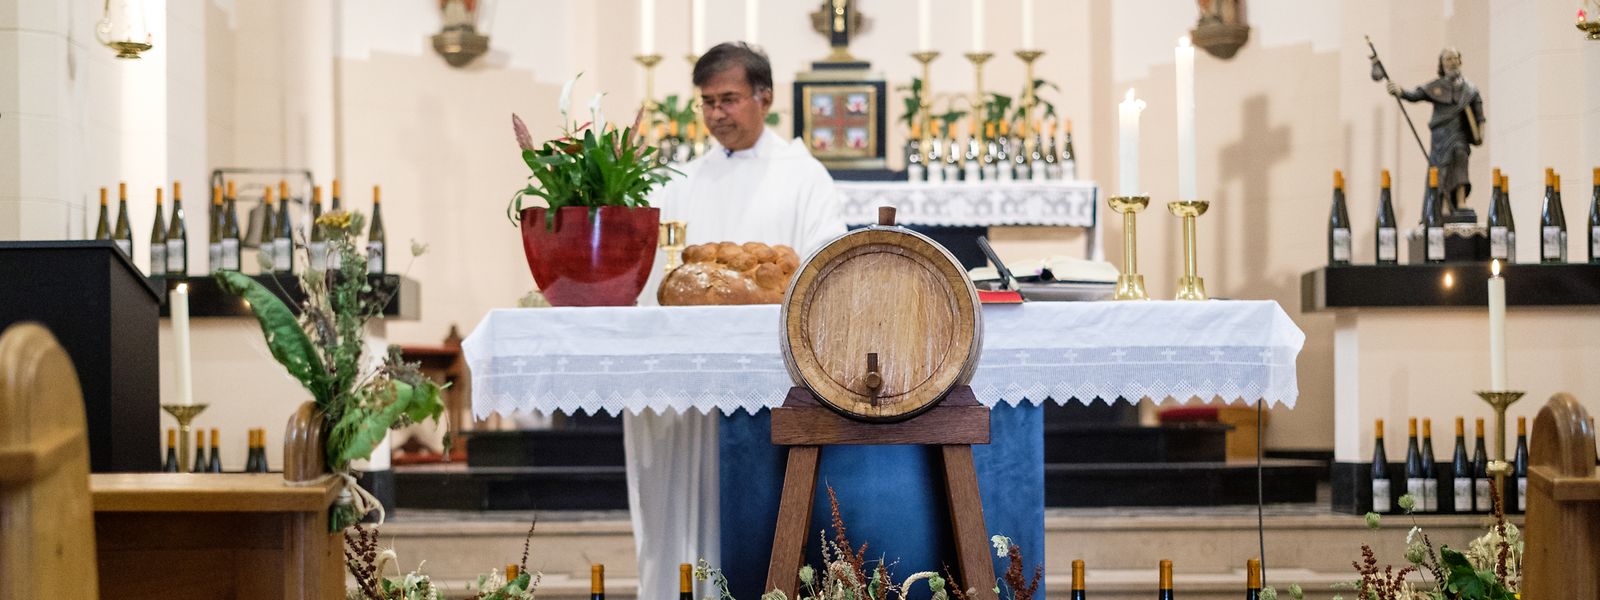 In Greiweldingen feiern die Einwohner seit 1985 an Mariä Himmelfahrt ihren Léiffrawëschdag. Die Segnung von Kräutersträußen, Brot und Wein steht im Mittelpunkt der Tradition.